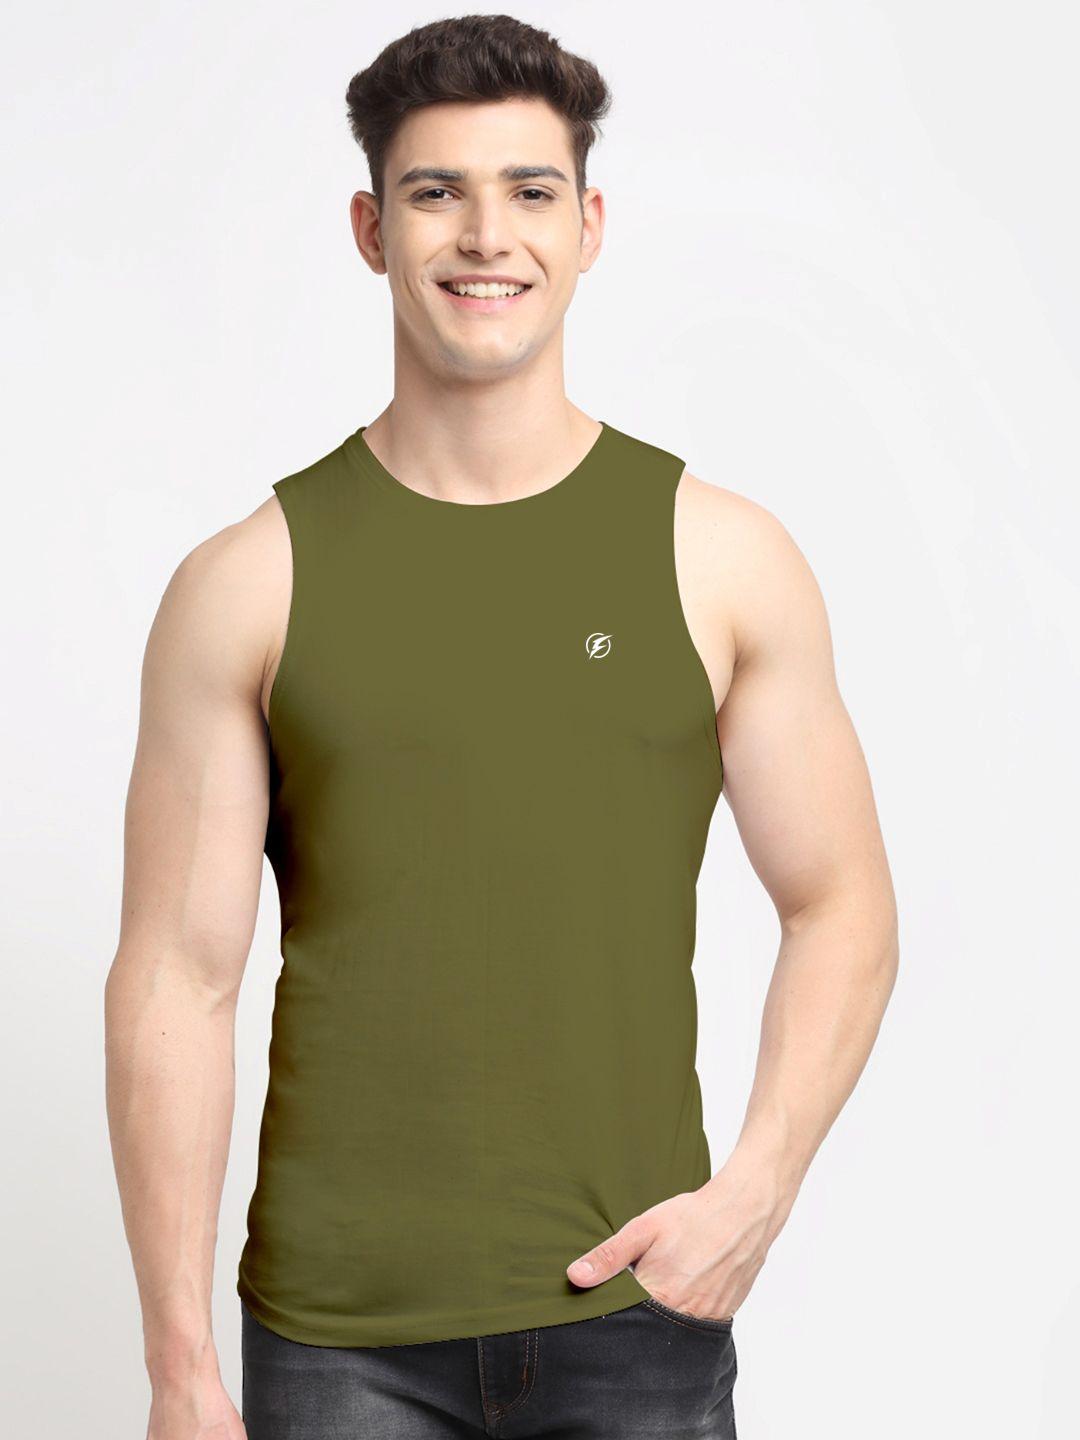 friskers-men-olive-green-solid-cotton-innerwear-vests